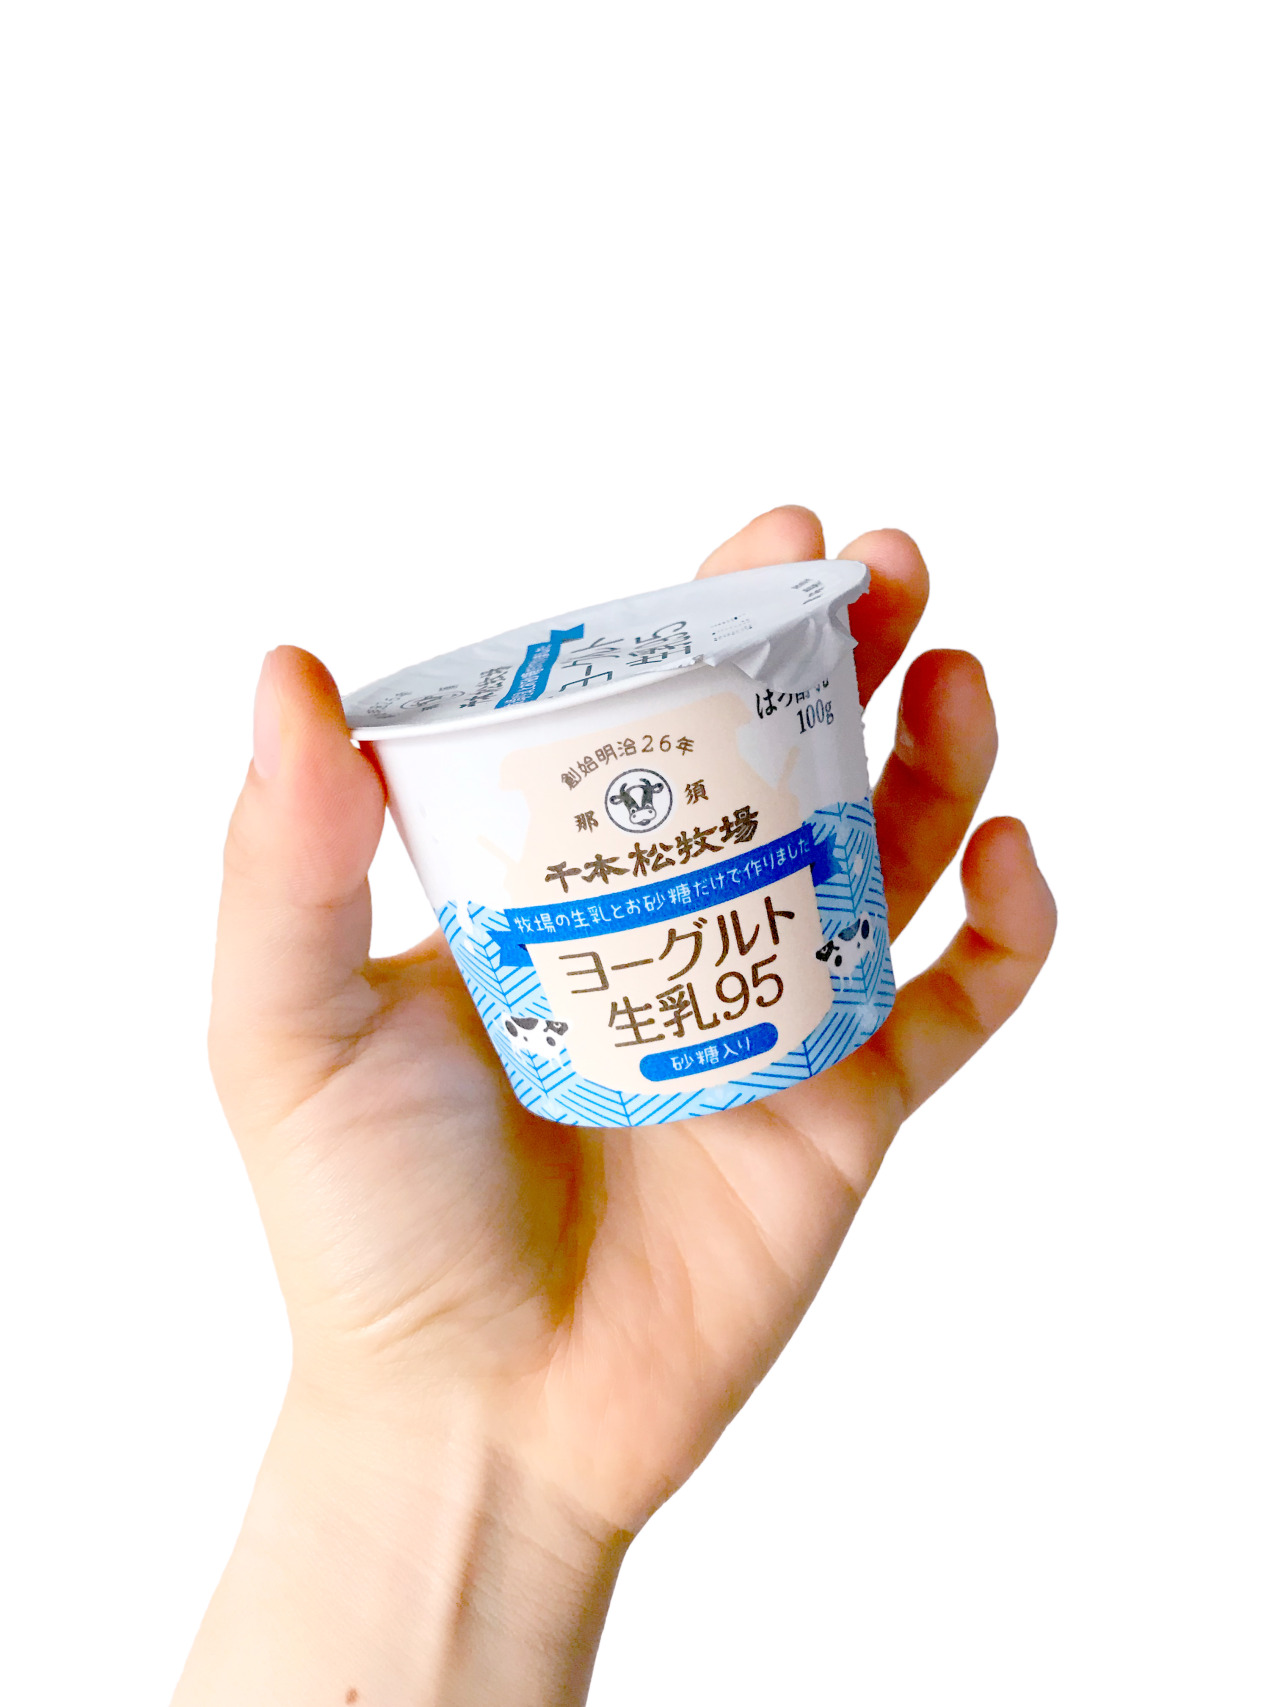 Yoghurt 那須 千本松牧場 ヨーグルト 生乳95 生乳95 にお砂糖5 を加えたバージョン